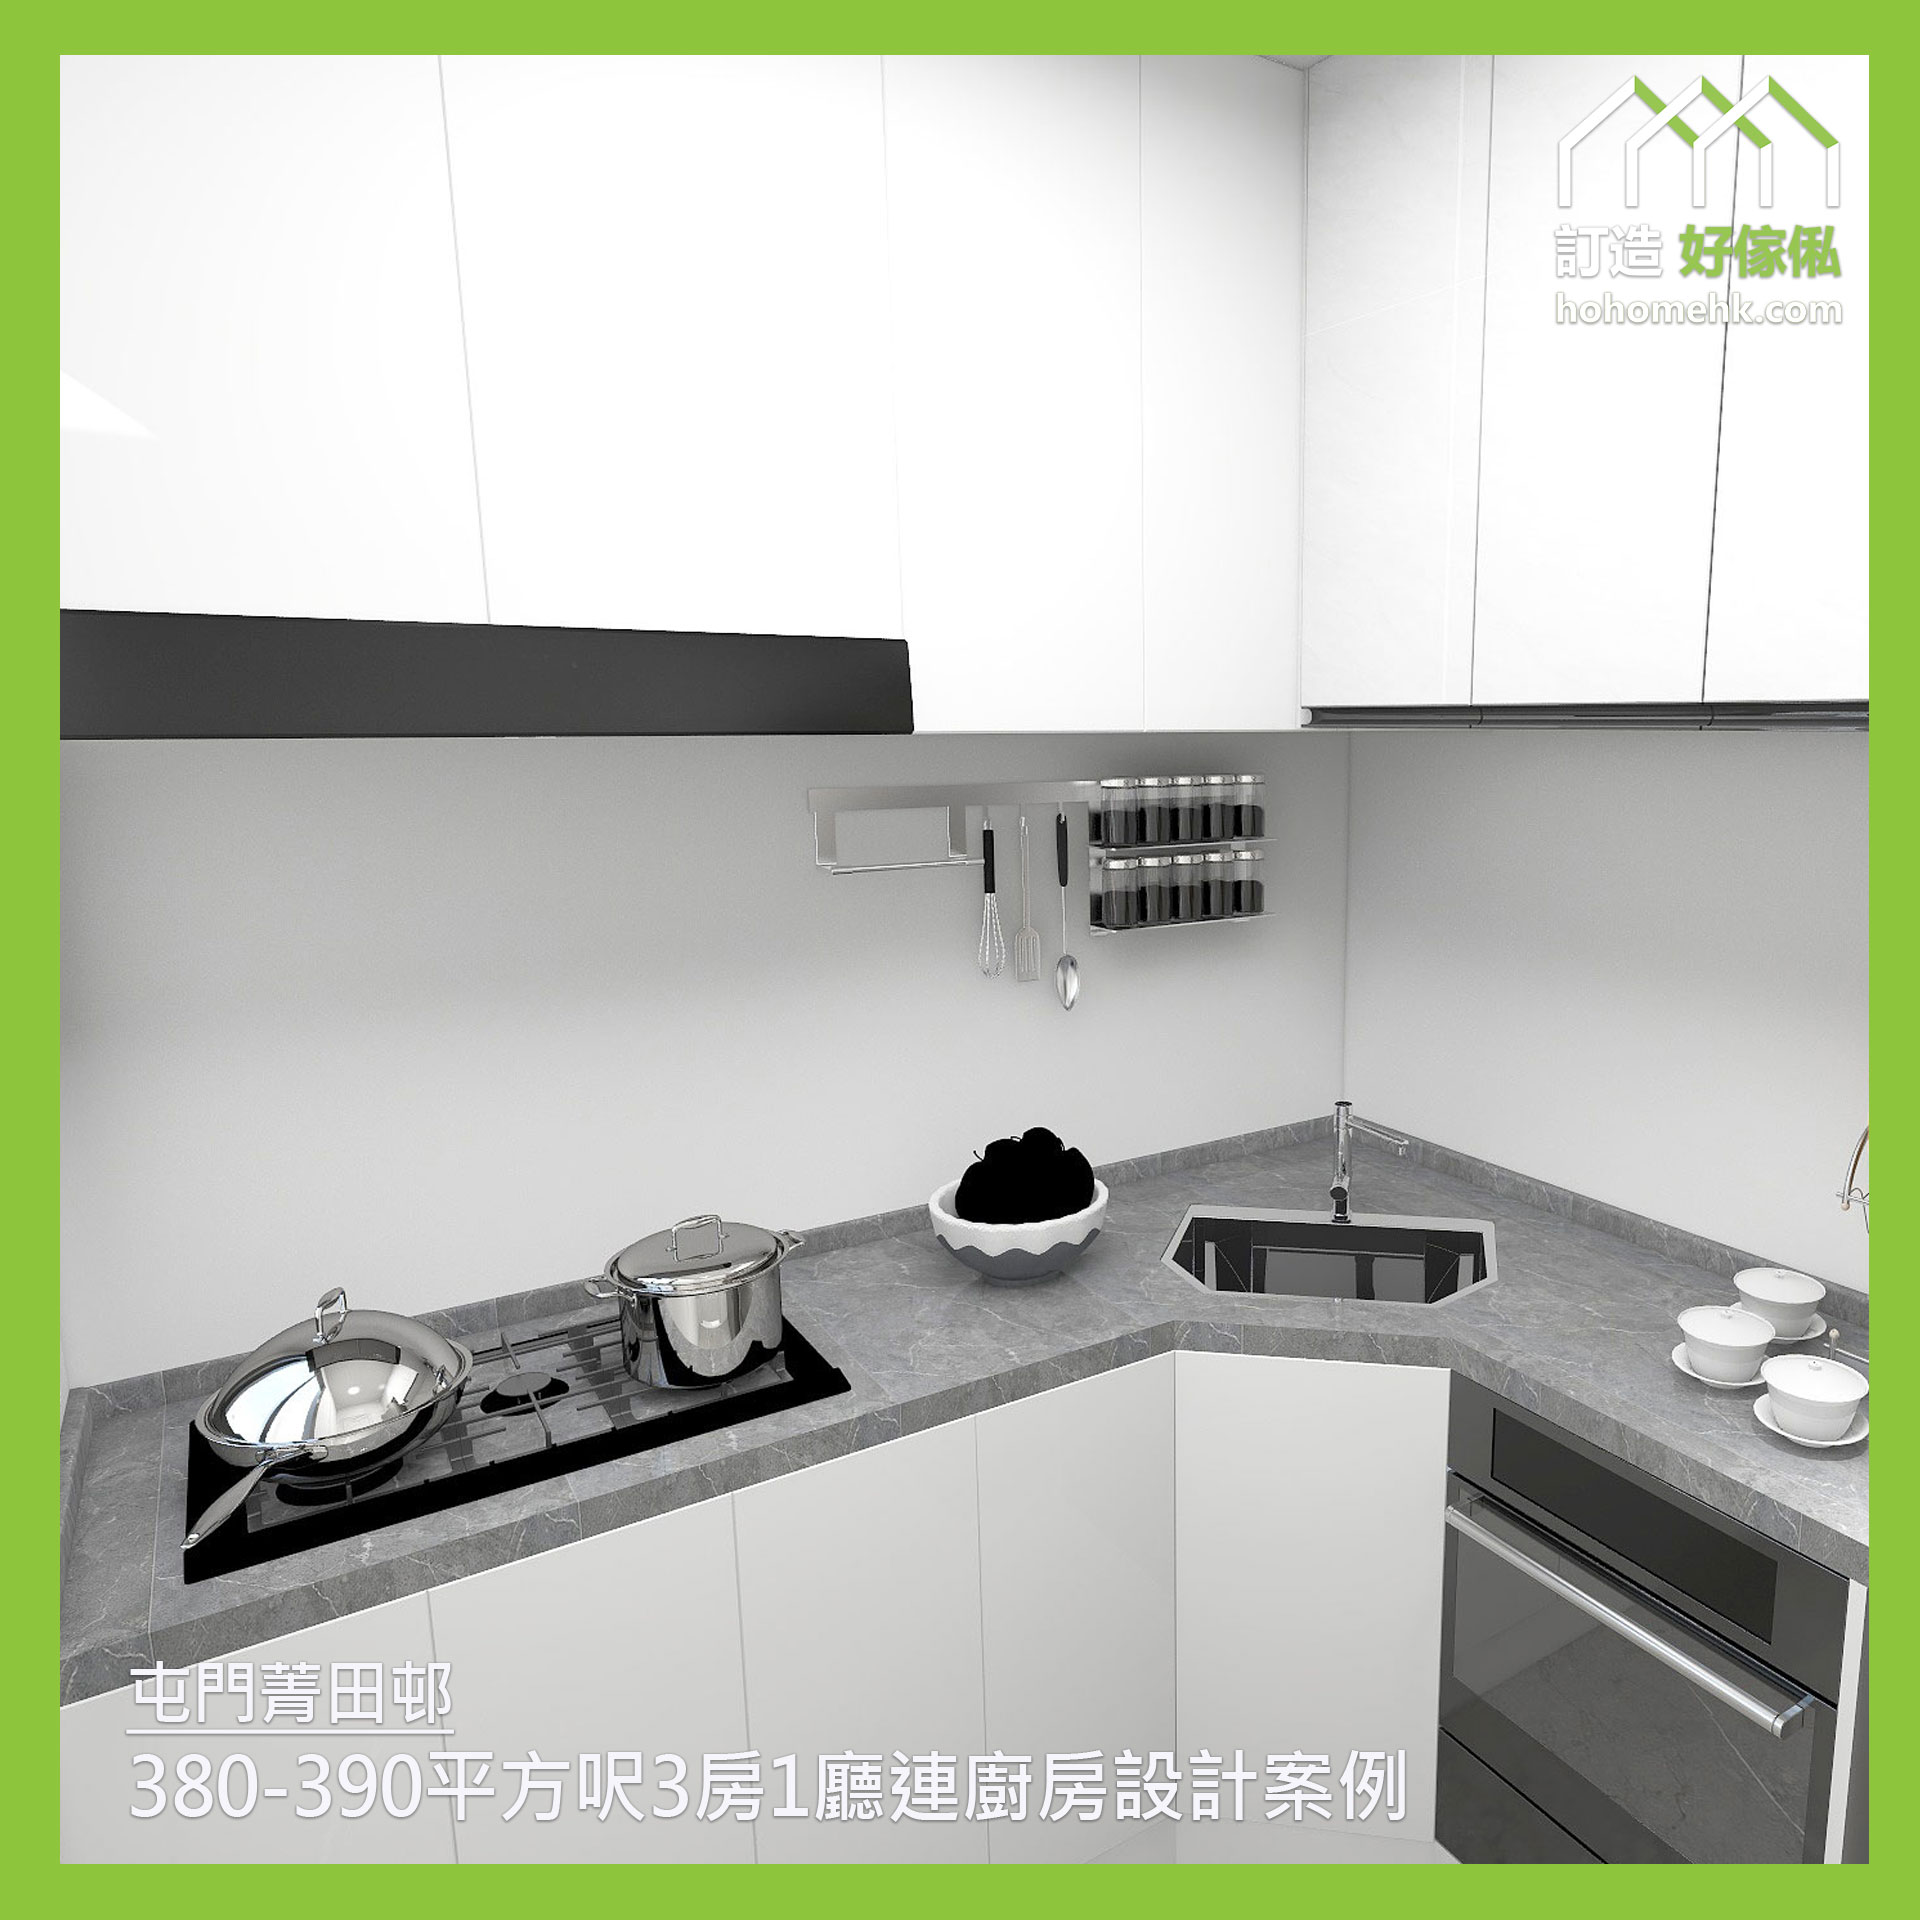 菁田邨 Ching Tin Estate 380-390呎3房1廳連廚房設計案例